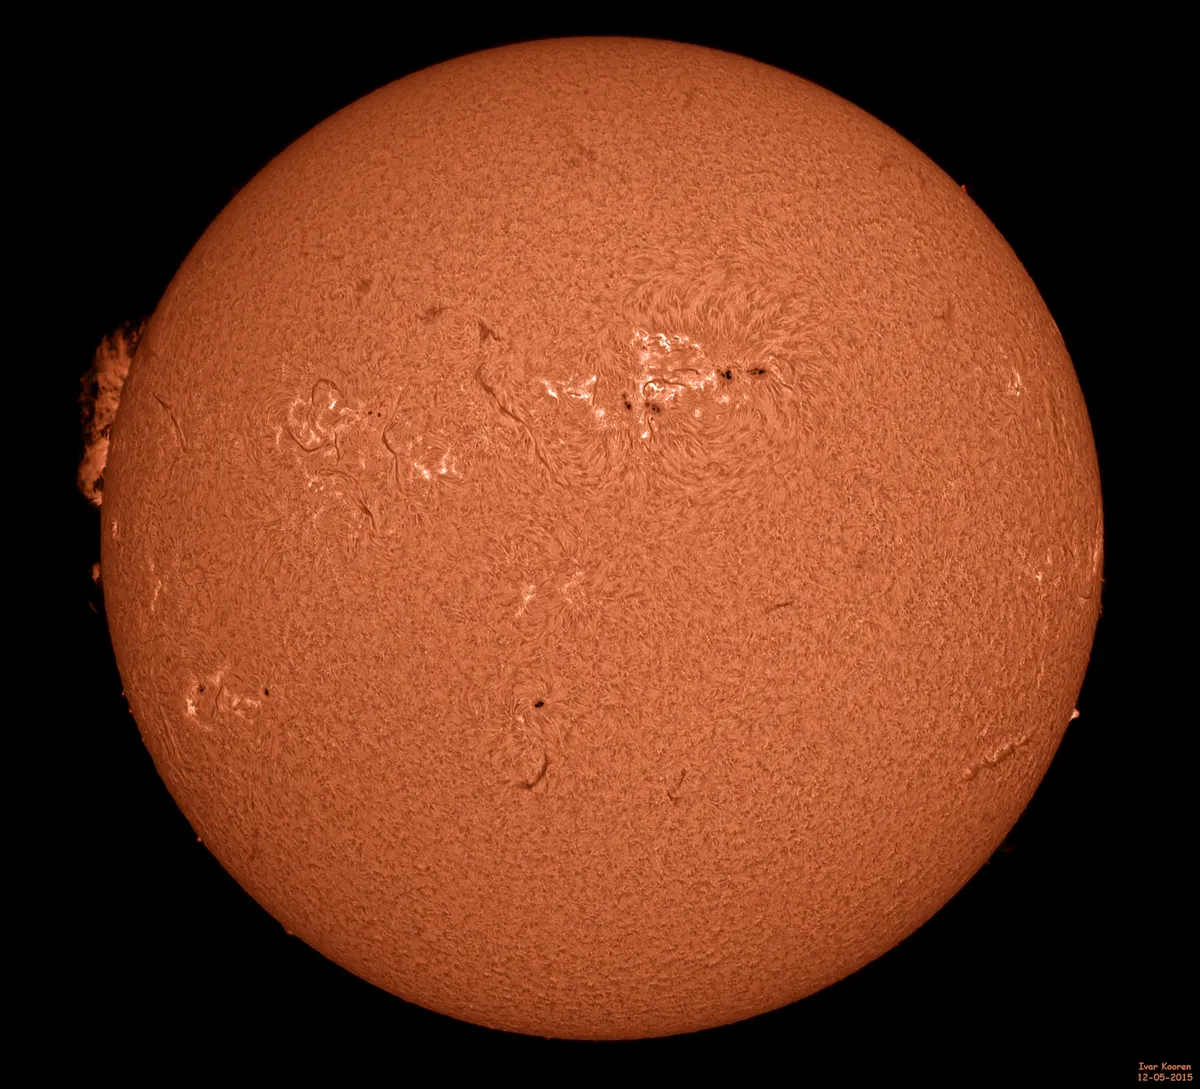 The Sun 12-05-2015 by Ivar Kooren, Heenvliet, The Netherlands. Equipment: Solarmax60S, 2.5x Televue Barlow, ASI174mm camera